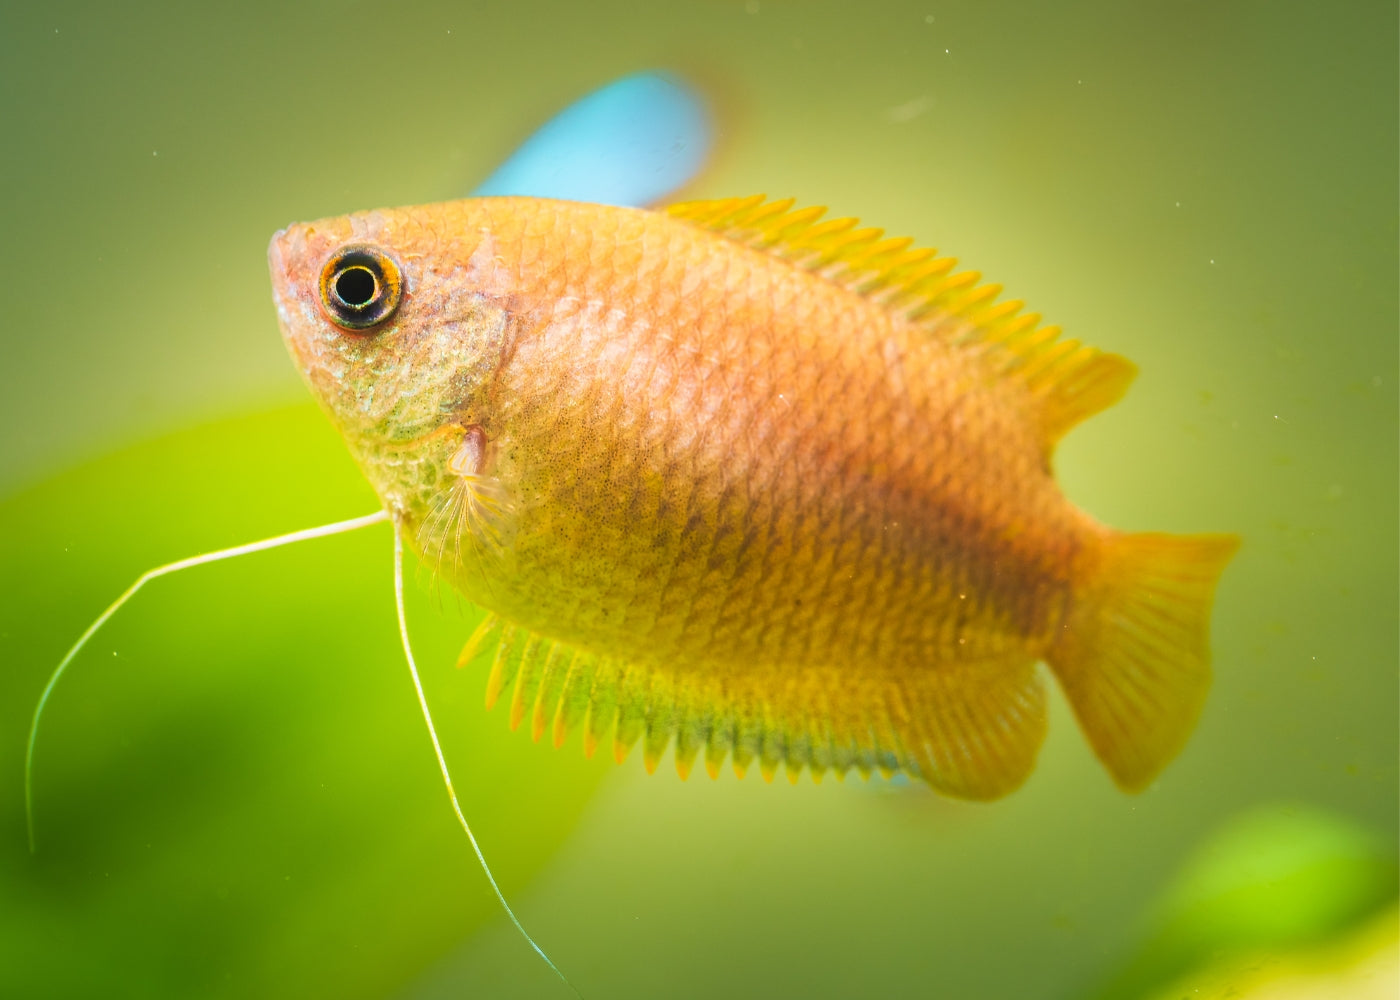 Honey Gourami| Aquarium Fish| Freshwater fish| coburgaquarium.com.au|Pet Fish online| Coburg Aquarium| Live Fish Store| Buy Fish online